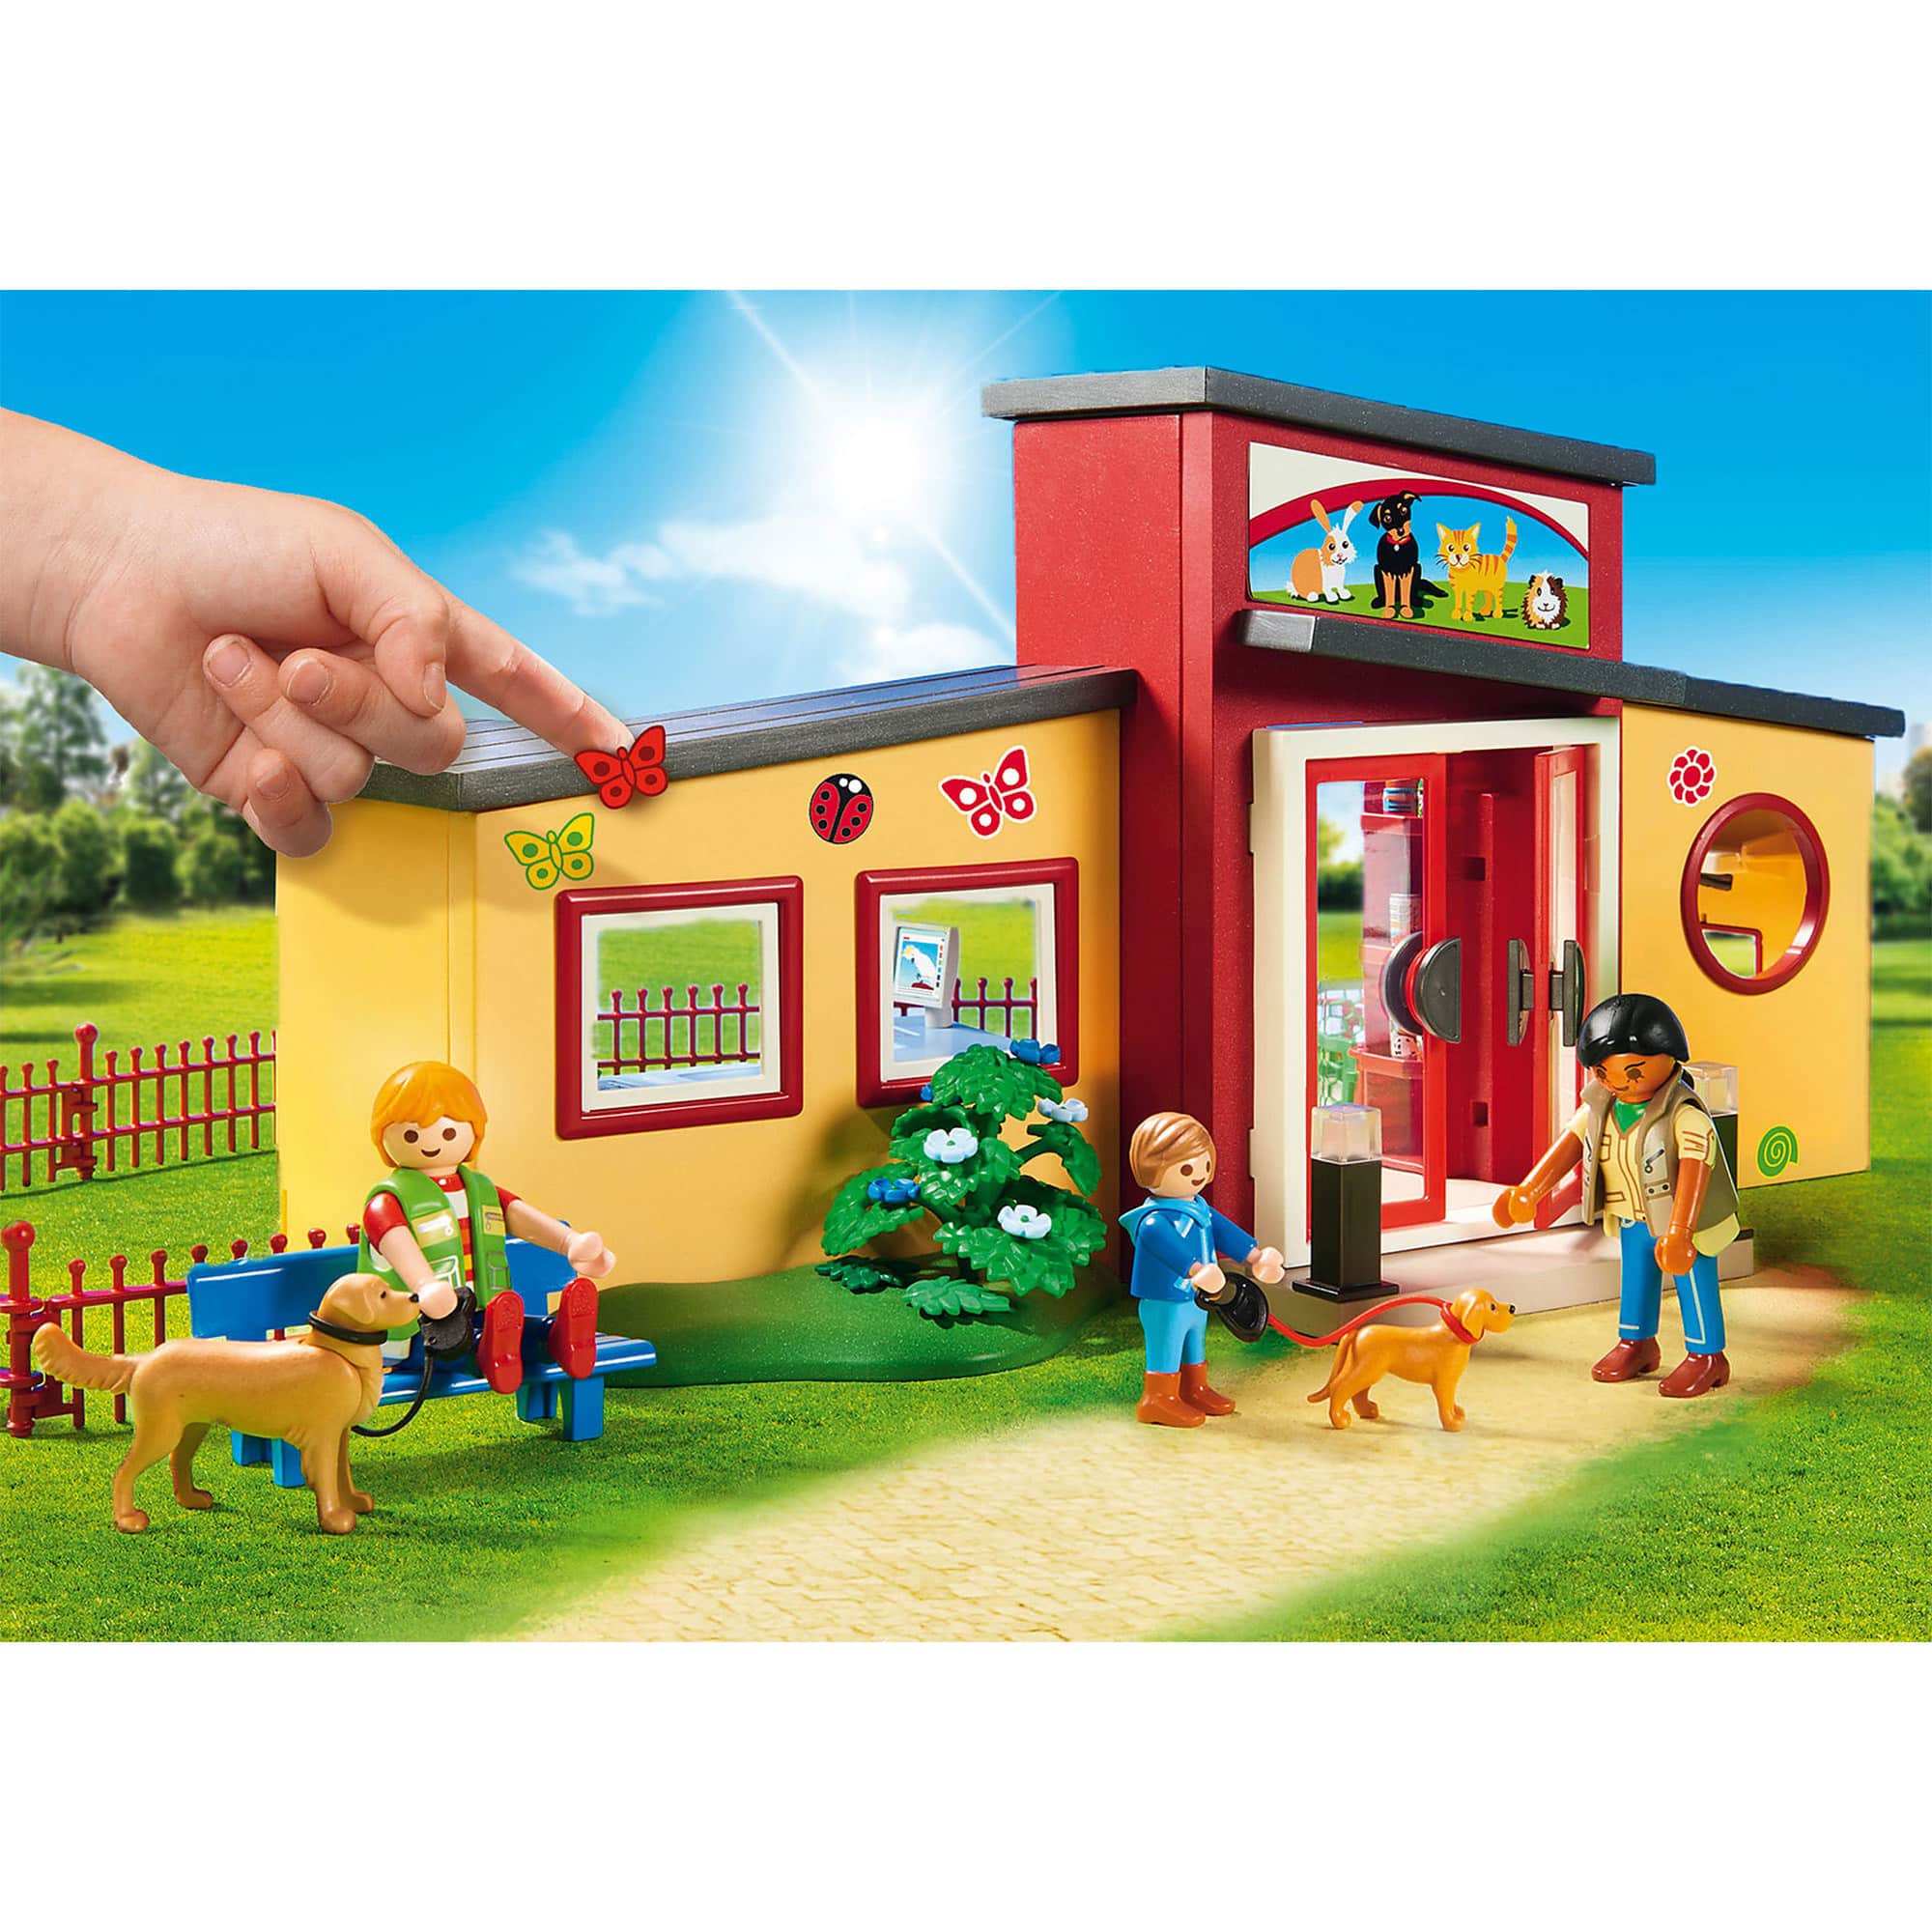 Playmobil - City Life - Tiny Paws Pet Hotel 9275